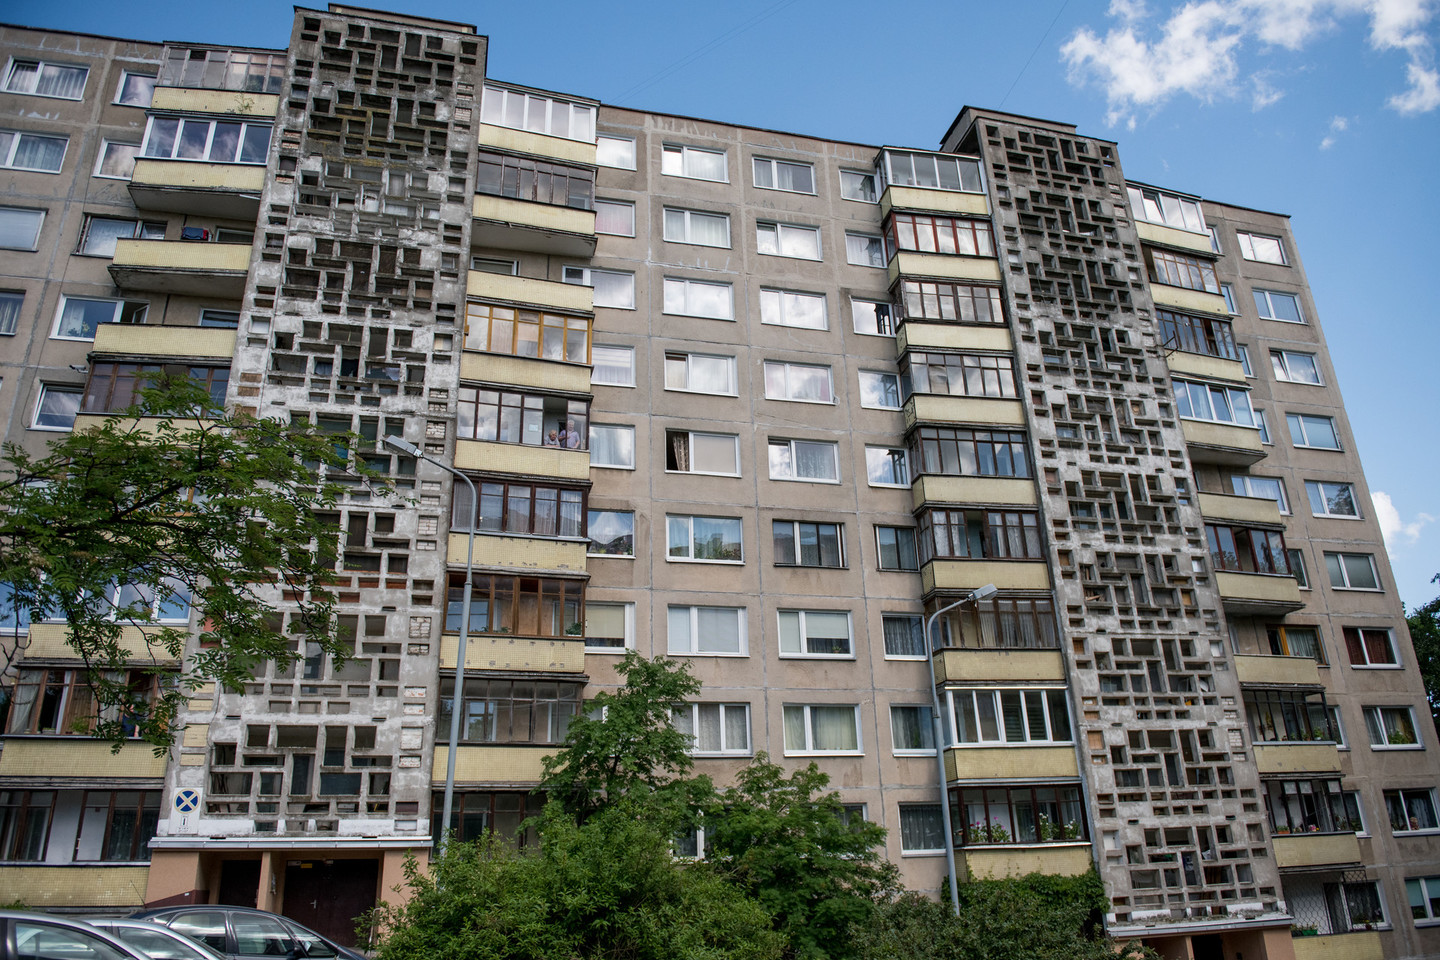 rekordas priklauso adresui: Vilnius, Architektų 56-101. Čia savo gyvavimą pradėjo 1263 verslo subjektai.<br>D.Umbraso nuotr.